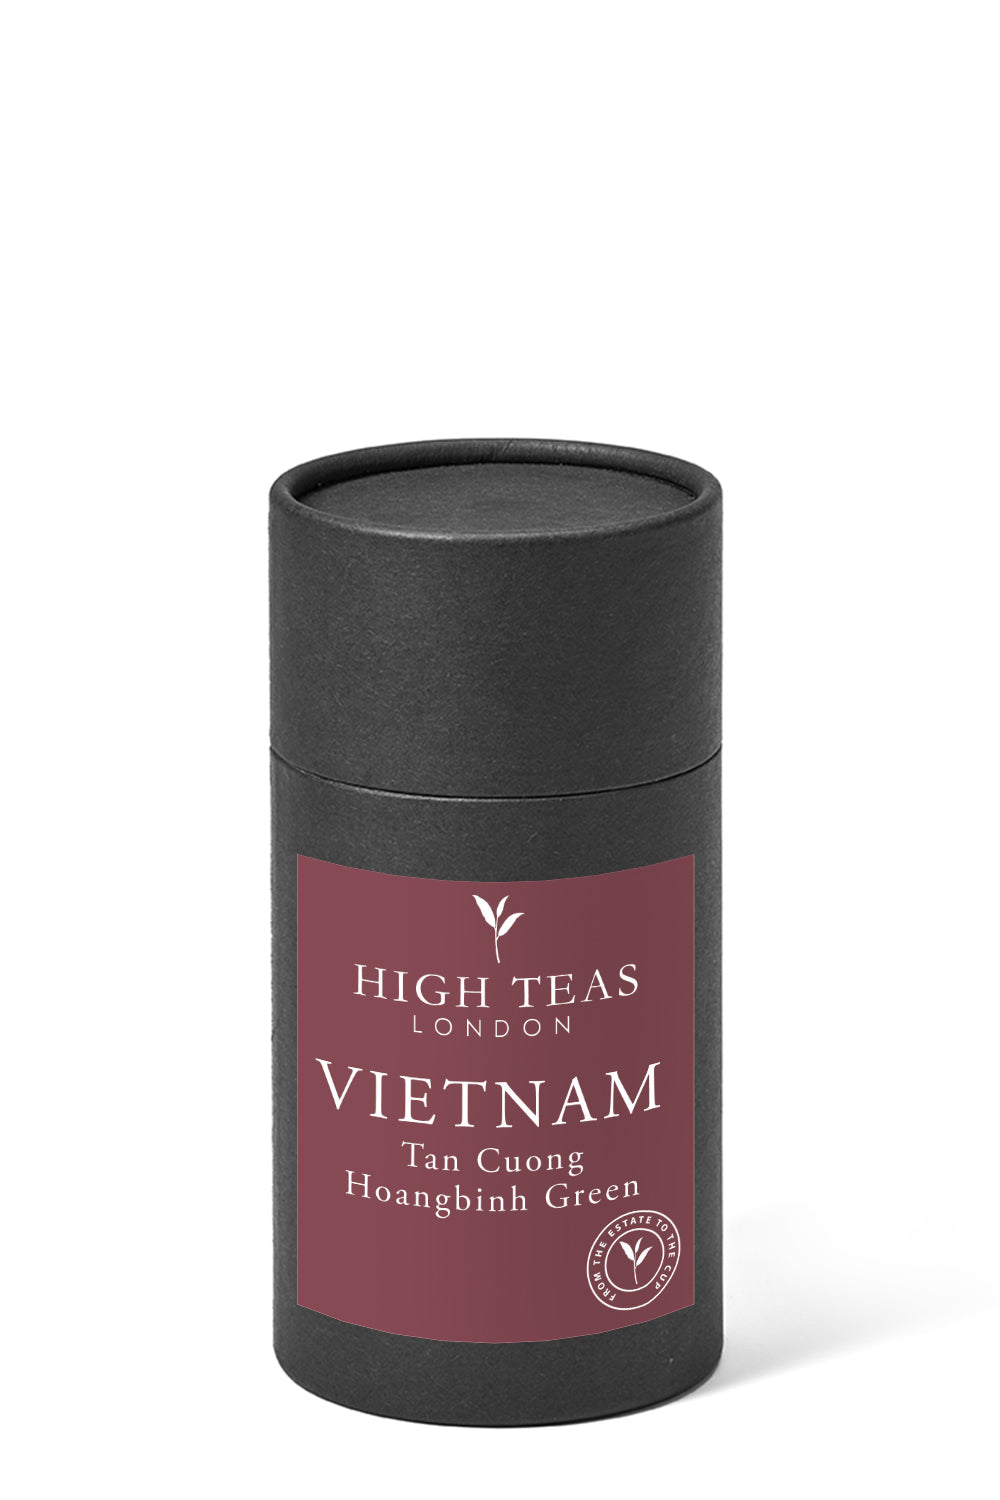 Vietnam - Tan Cuong Hoangbinh Green Tea-60g gift-Loose Leaf Tea-High Teas